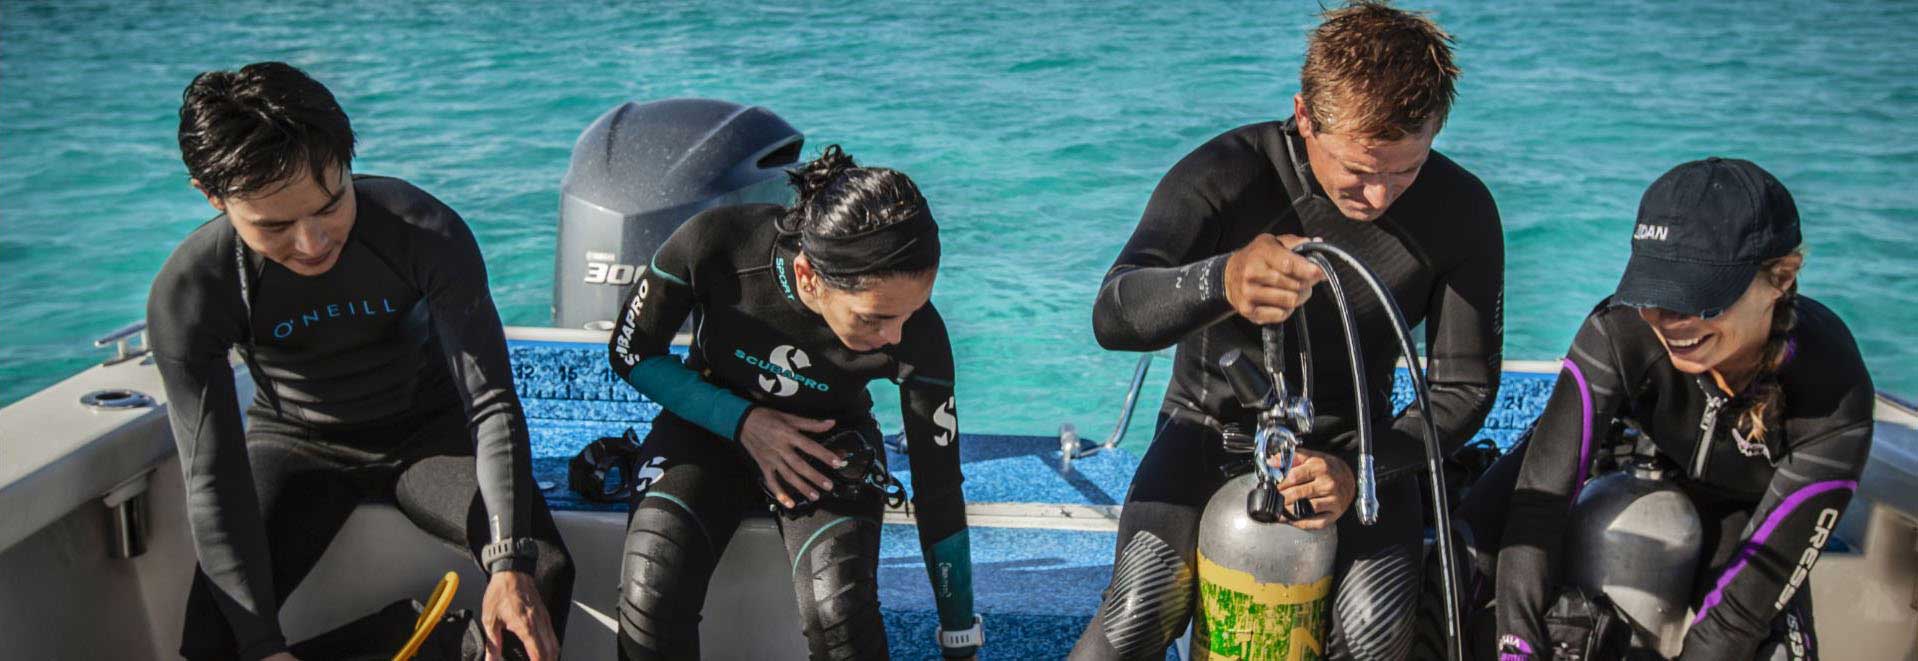 4 divers preparing to dive